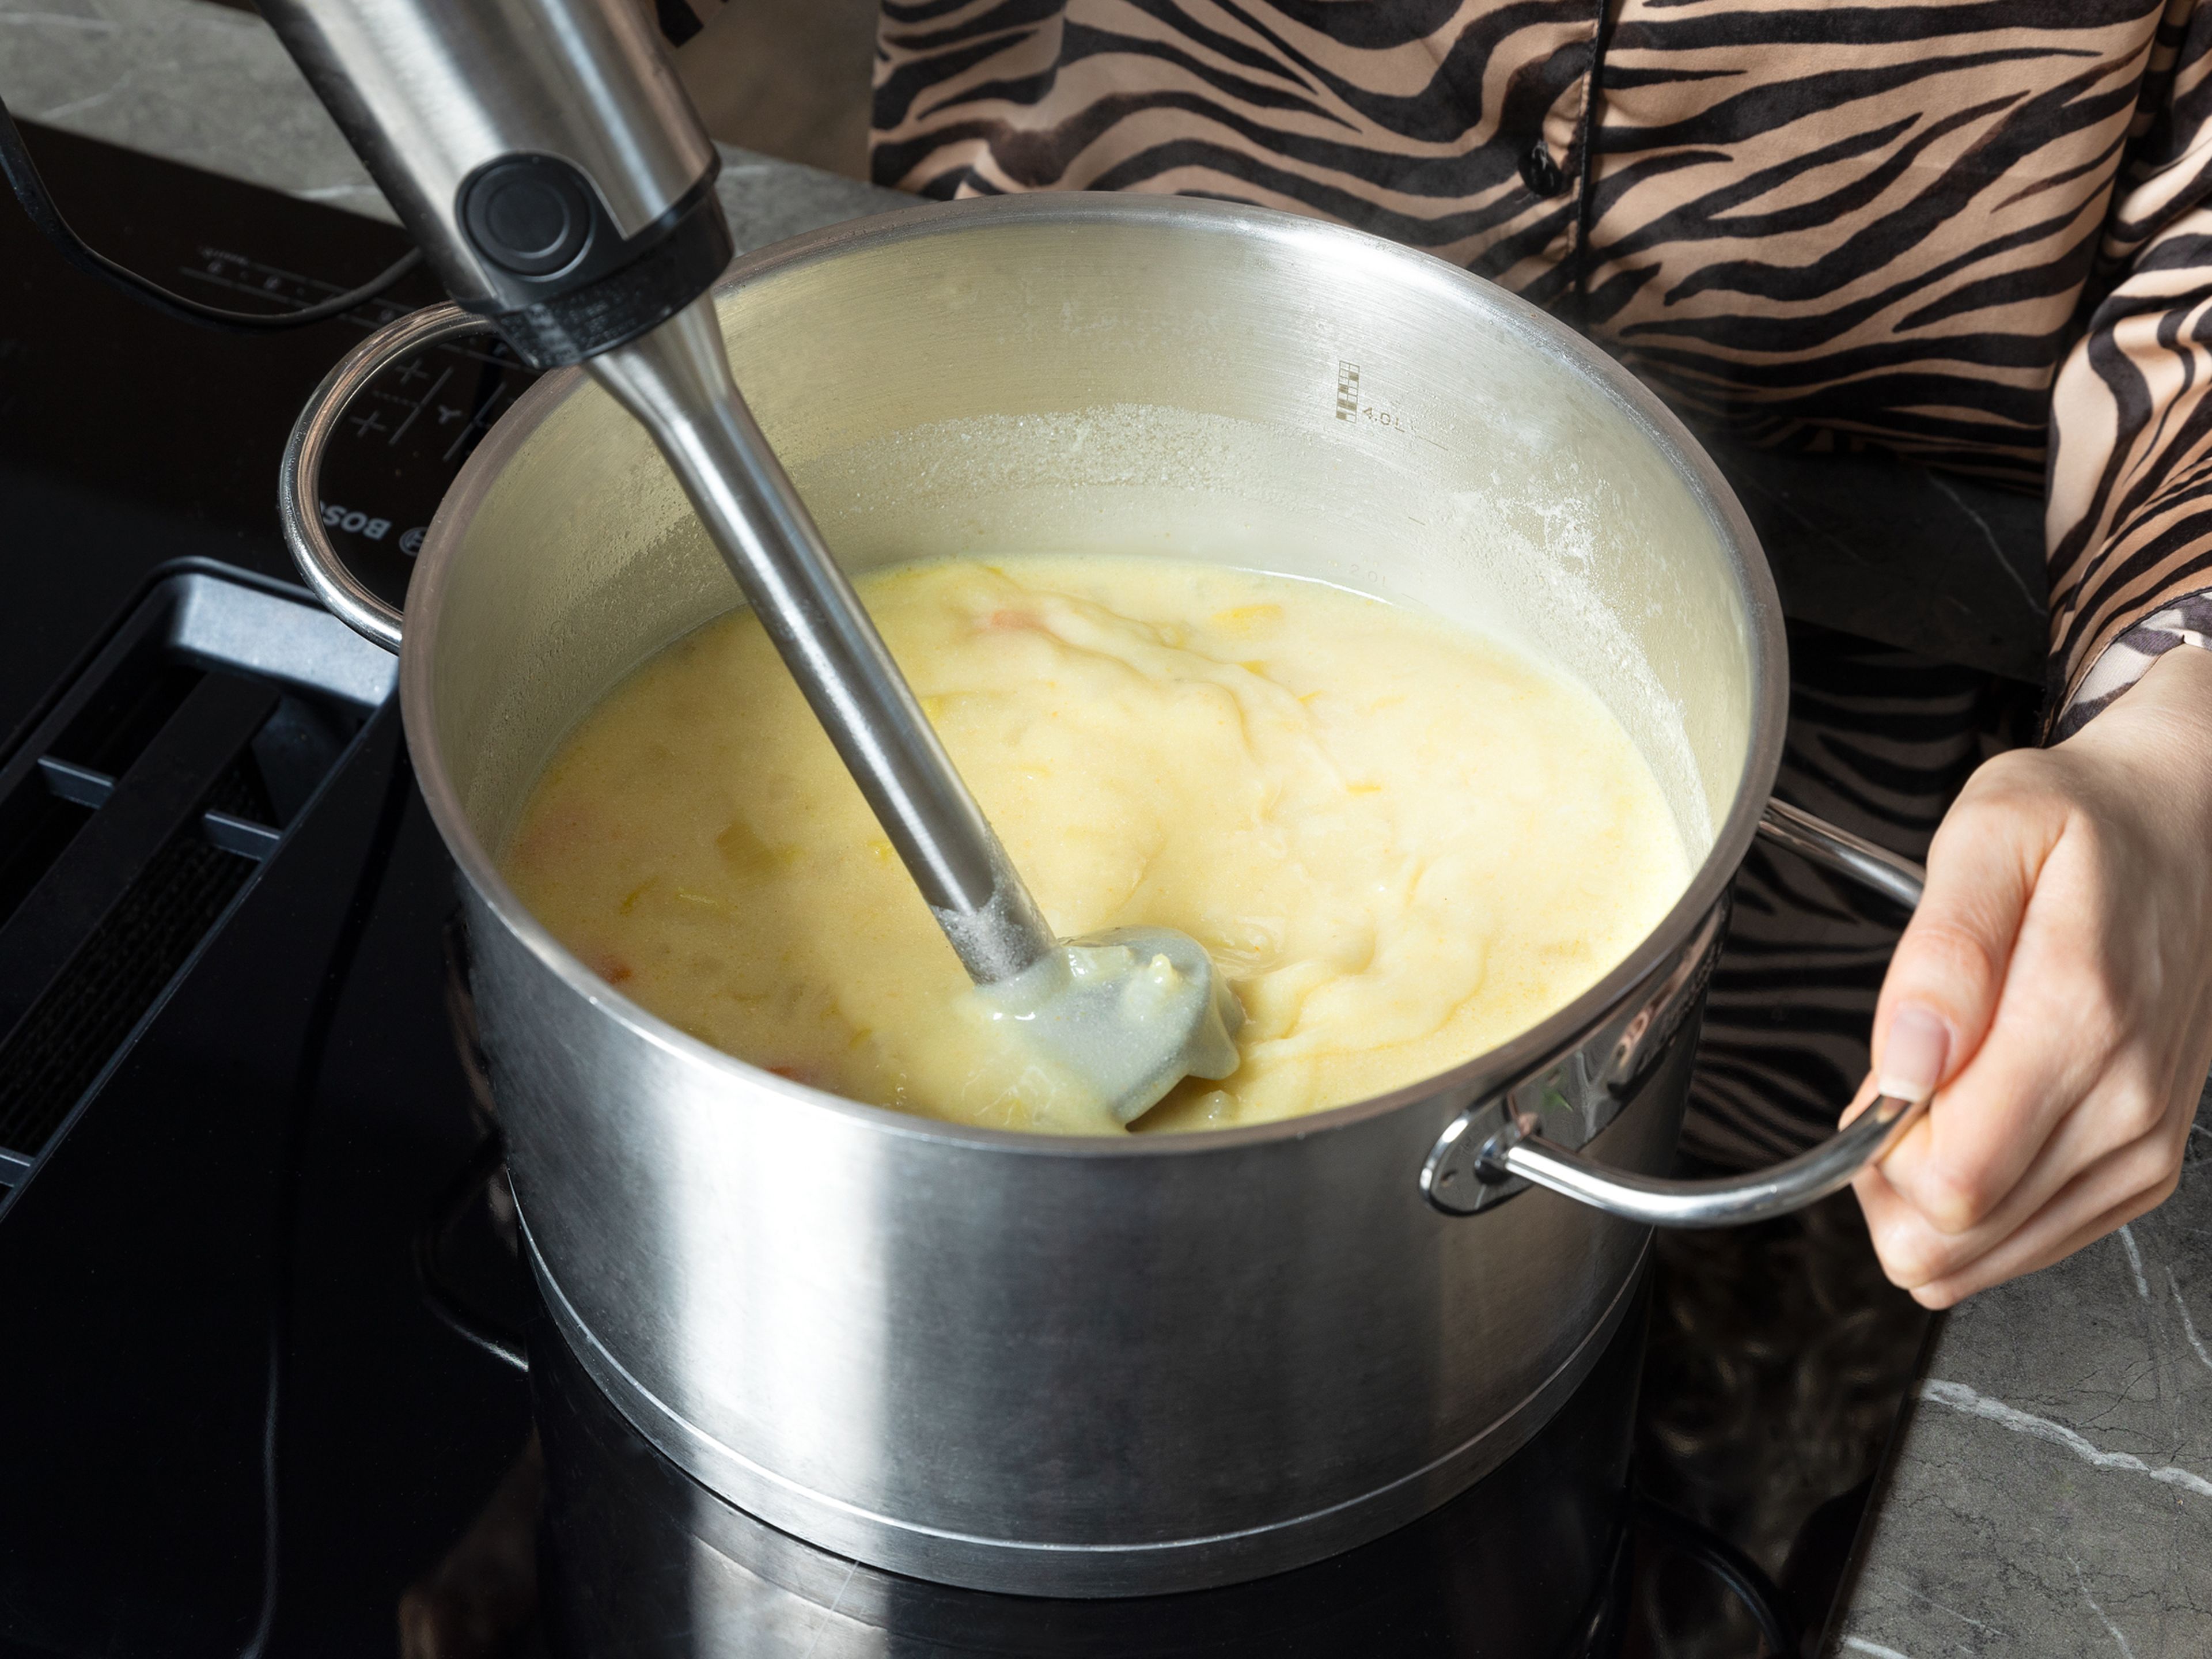 Den größten Teil der Crème fraîche unter die Suppe rühren, einen Klecks zum Servieren aufheben. Die Suppe im Topf mit einem Stabmixer kurz anpürieren, bis sie cremig, aber noch stückig ist. Die Hitze wieder auf mittlere Stufe stellen.